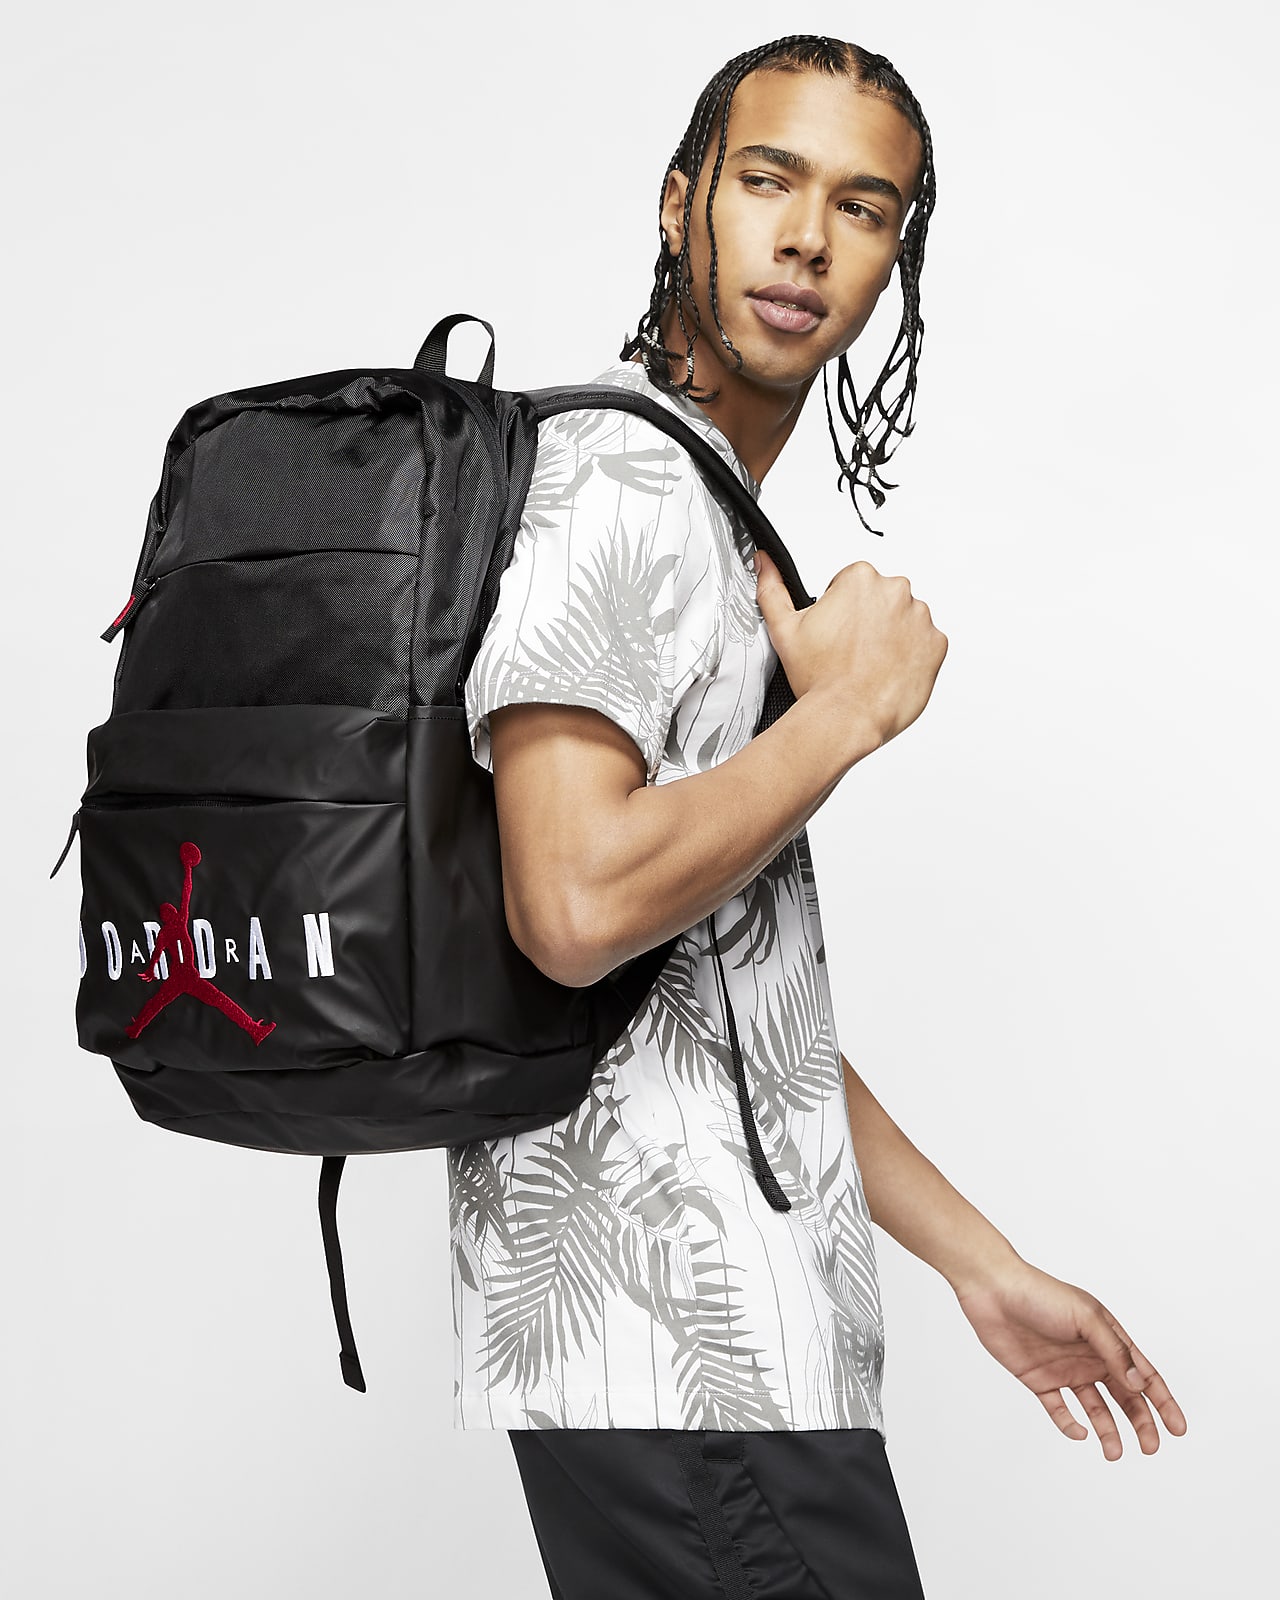 where to buy jordan backpacks